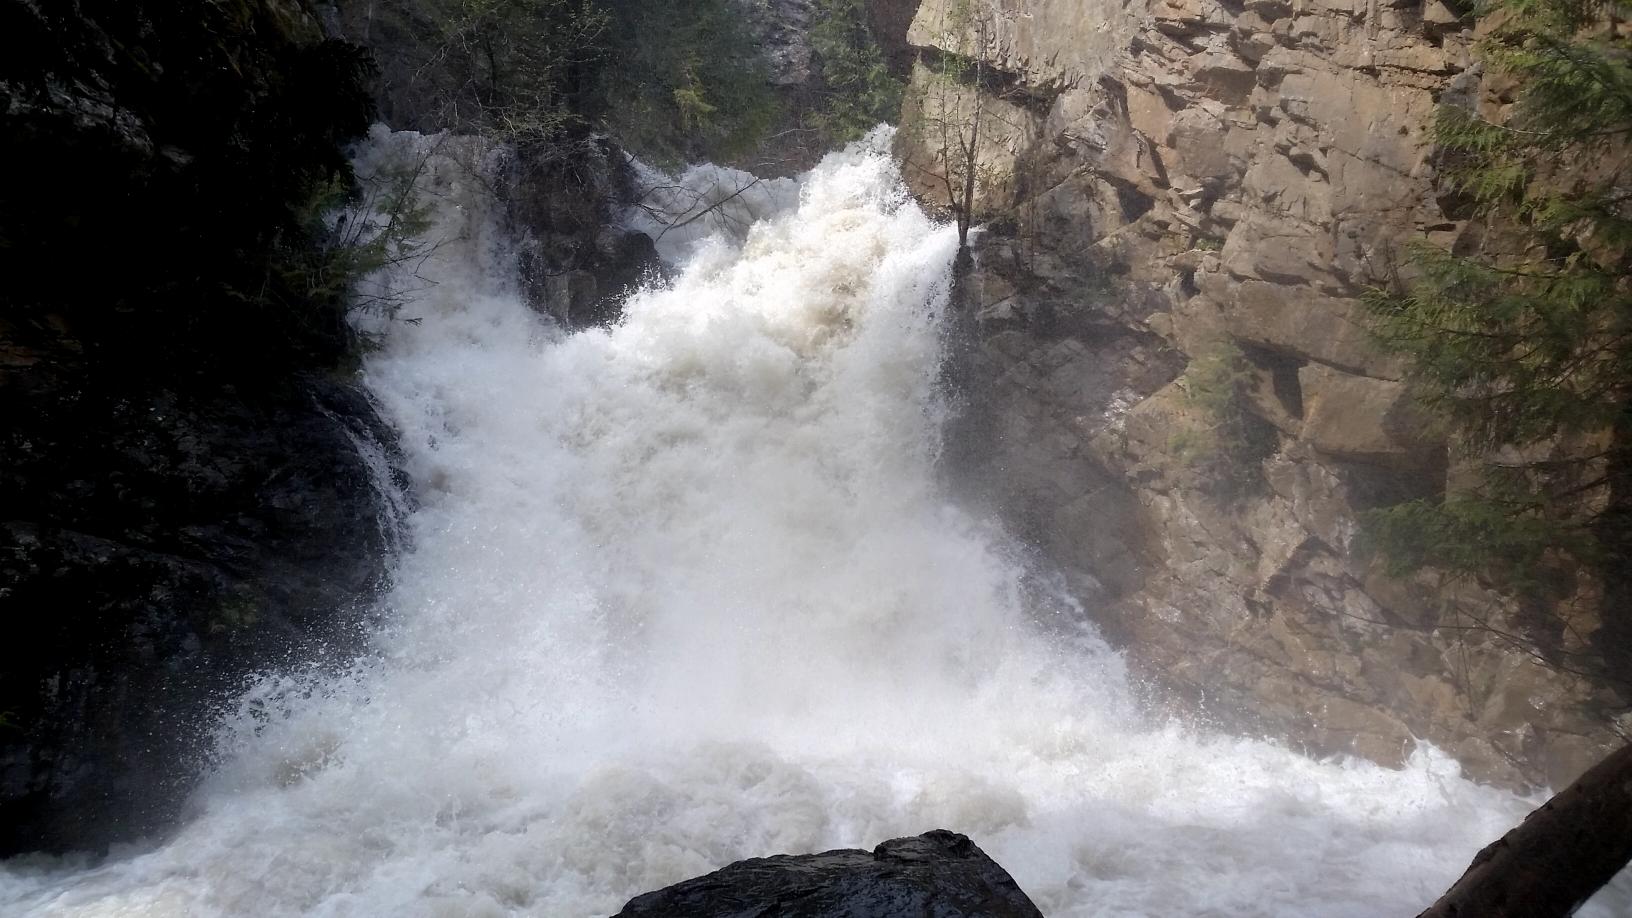 Upper tier of Falls Creek Falls